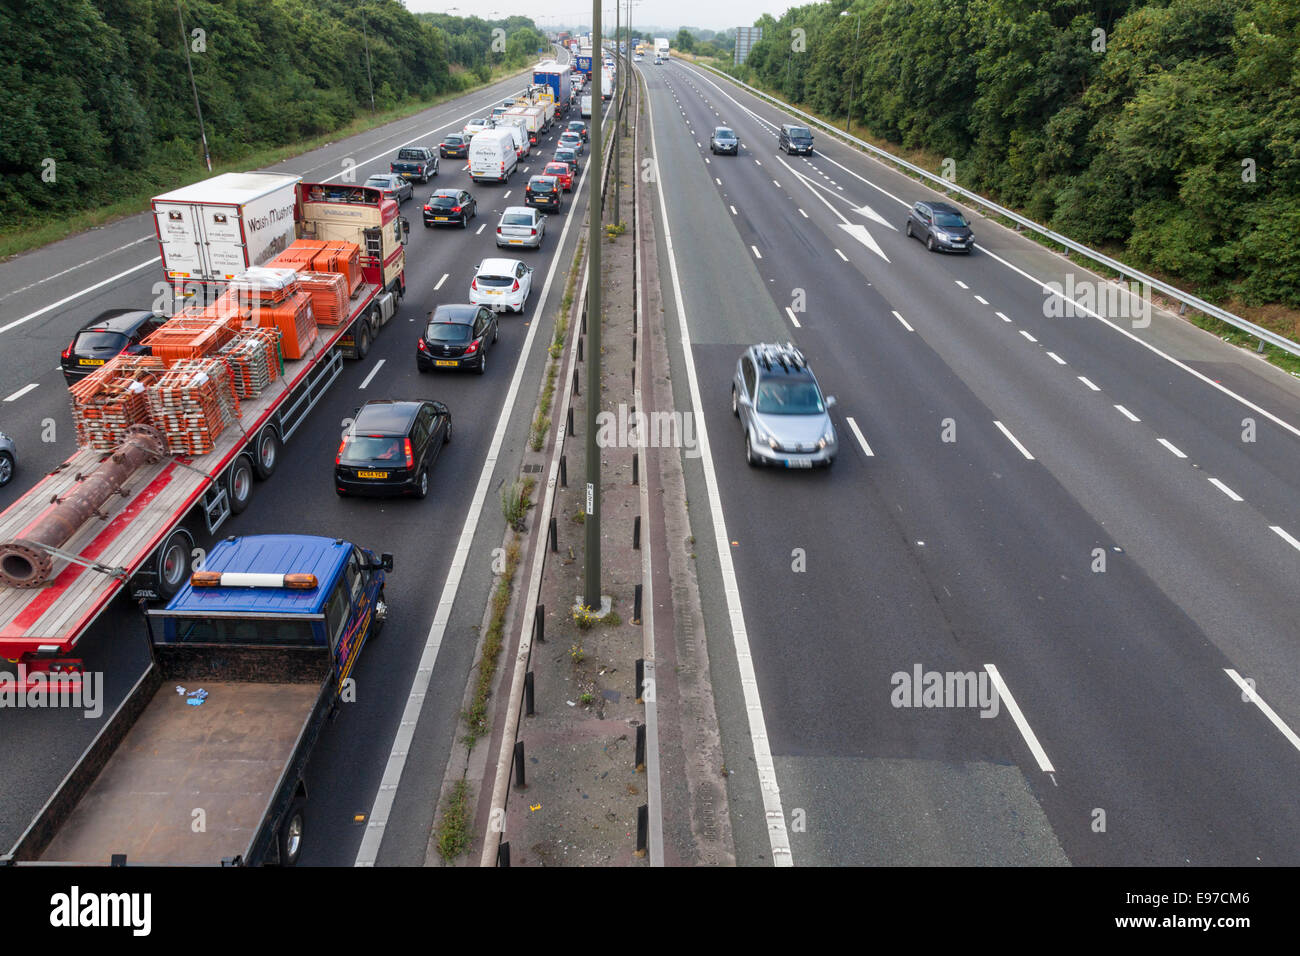 Embouteillage. Queue avec des véhicules à l'arrêt sur l'autoroute M1 en direction sud chaussée avec des voies en direction nord. Nottinghamshire, Angleterre, RU Banque D'Images